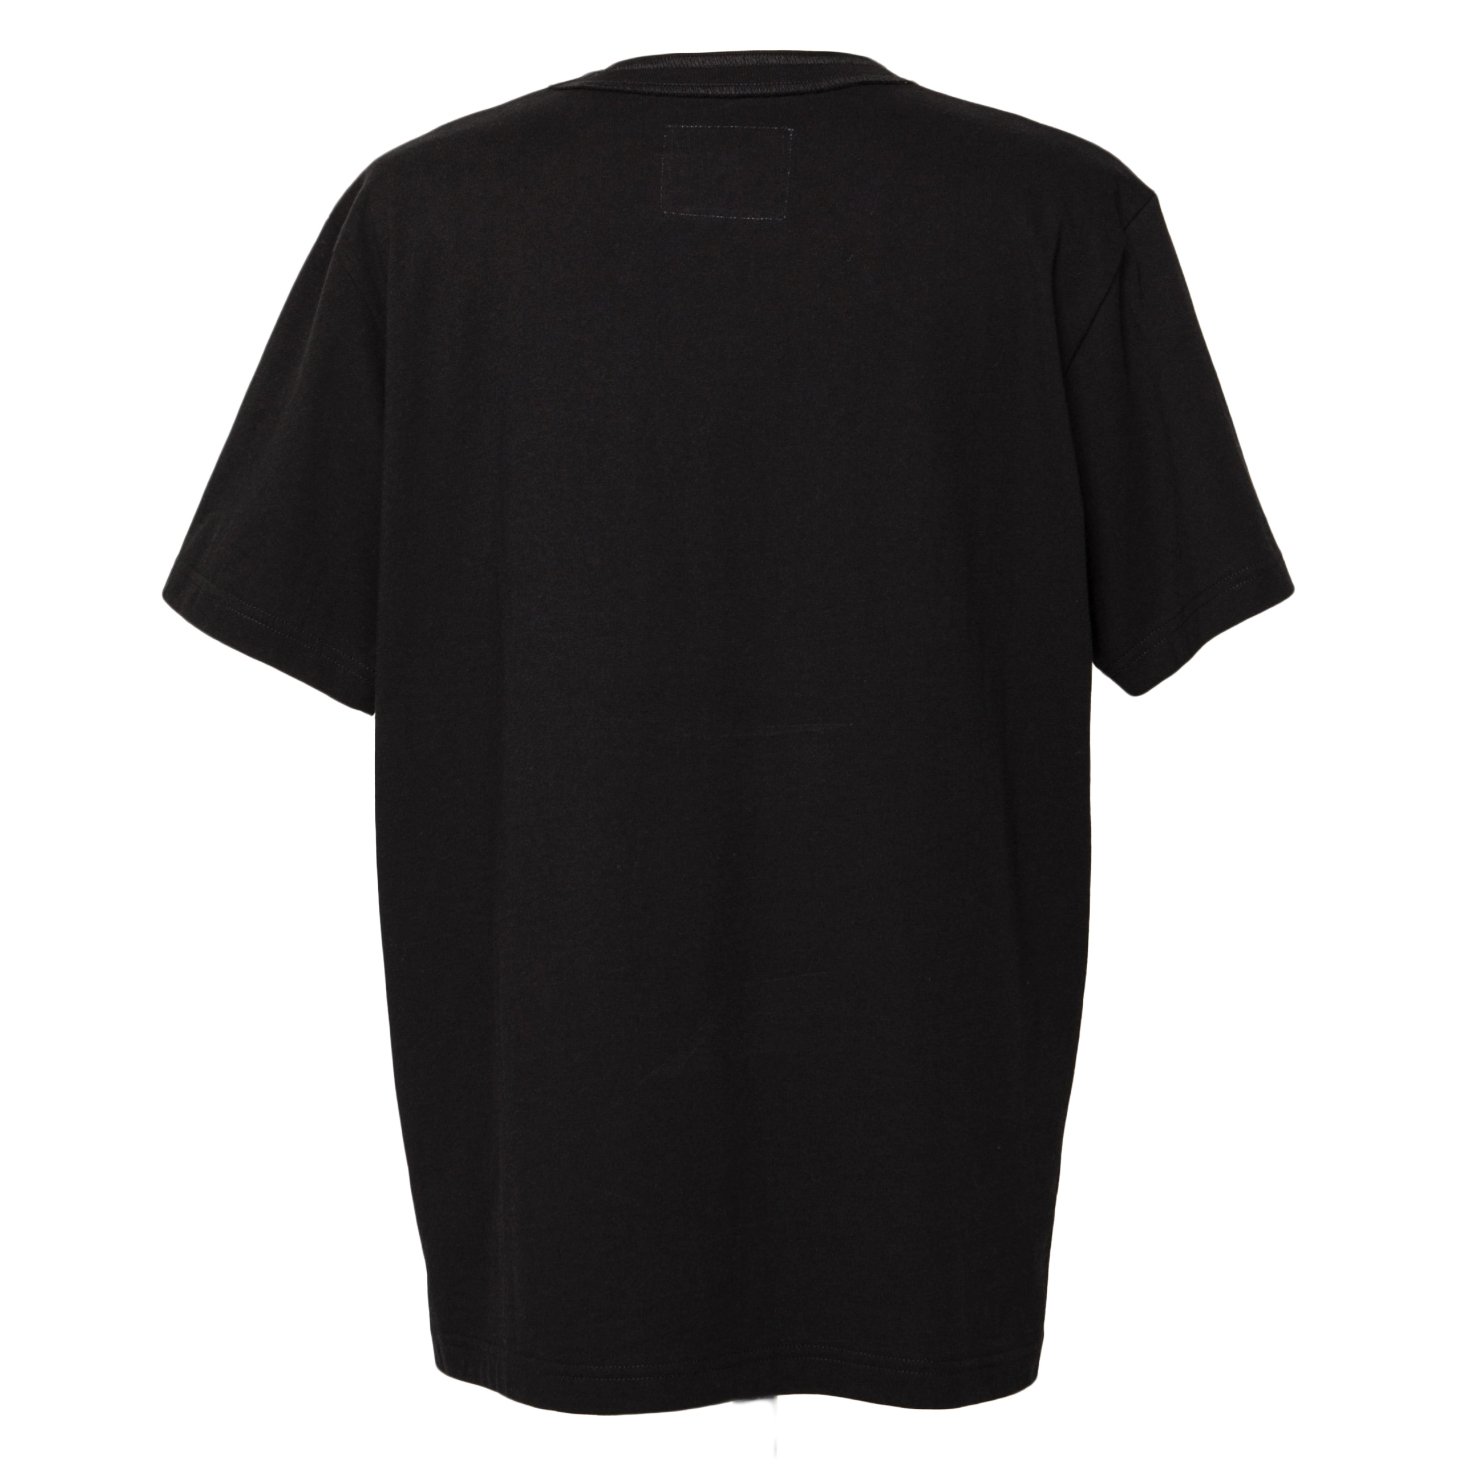 KAWS x Sacai Embroidery T-shirt Black White Men's - FW21 - US